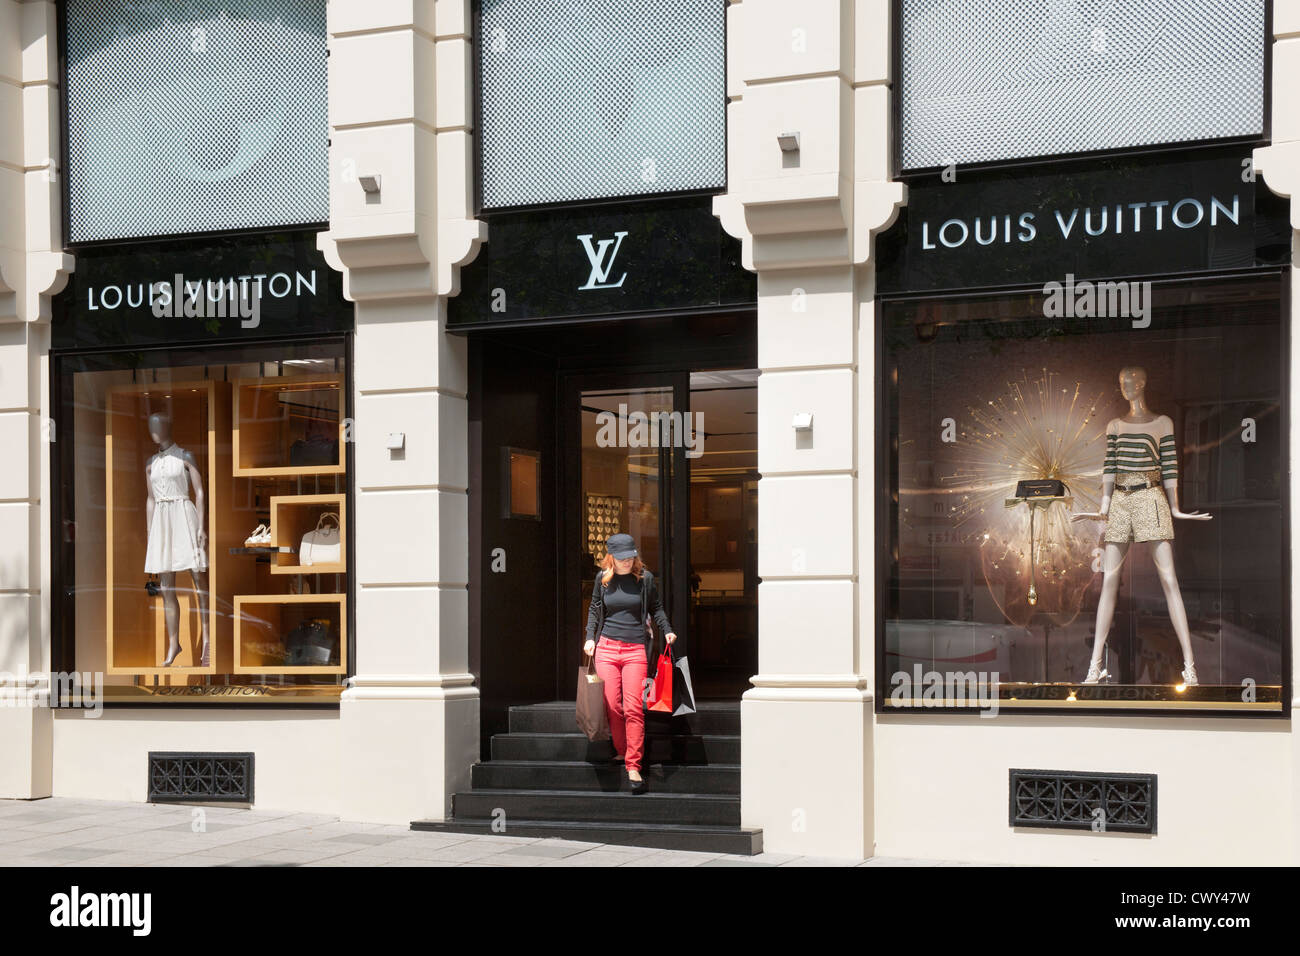 Türkei, Istanbul, Nisantasi, Abdi Ipekci Caddesi, Einkaufsboulevard mit Luxusmarken. Louis Vuitton Geschäft. Stock Photo